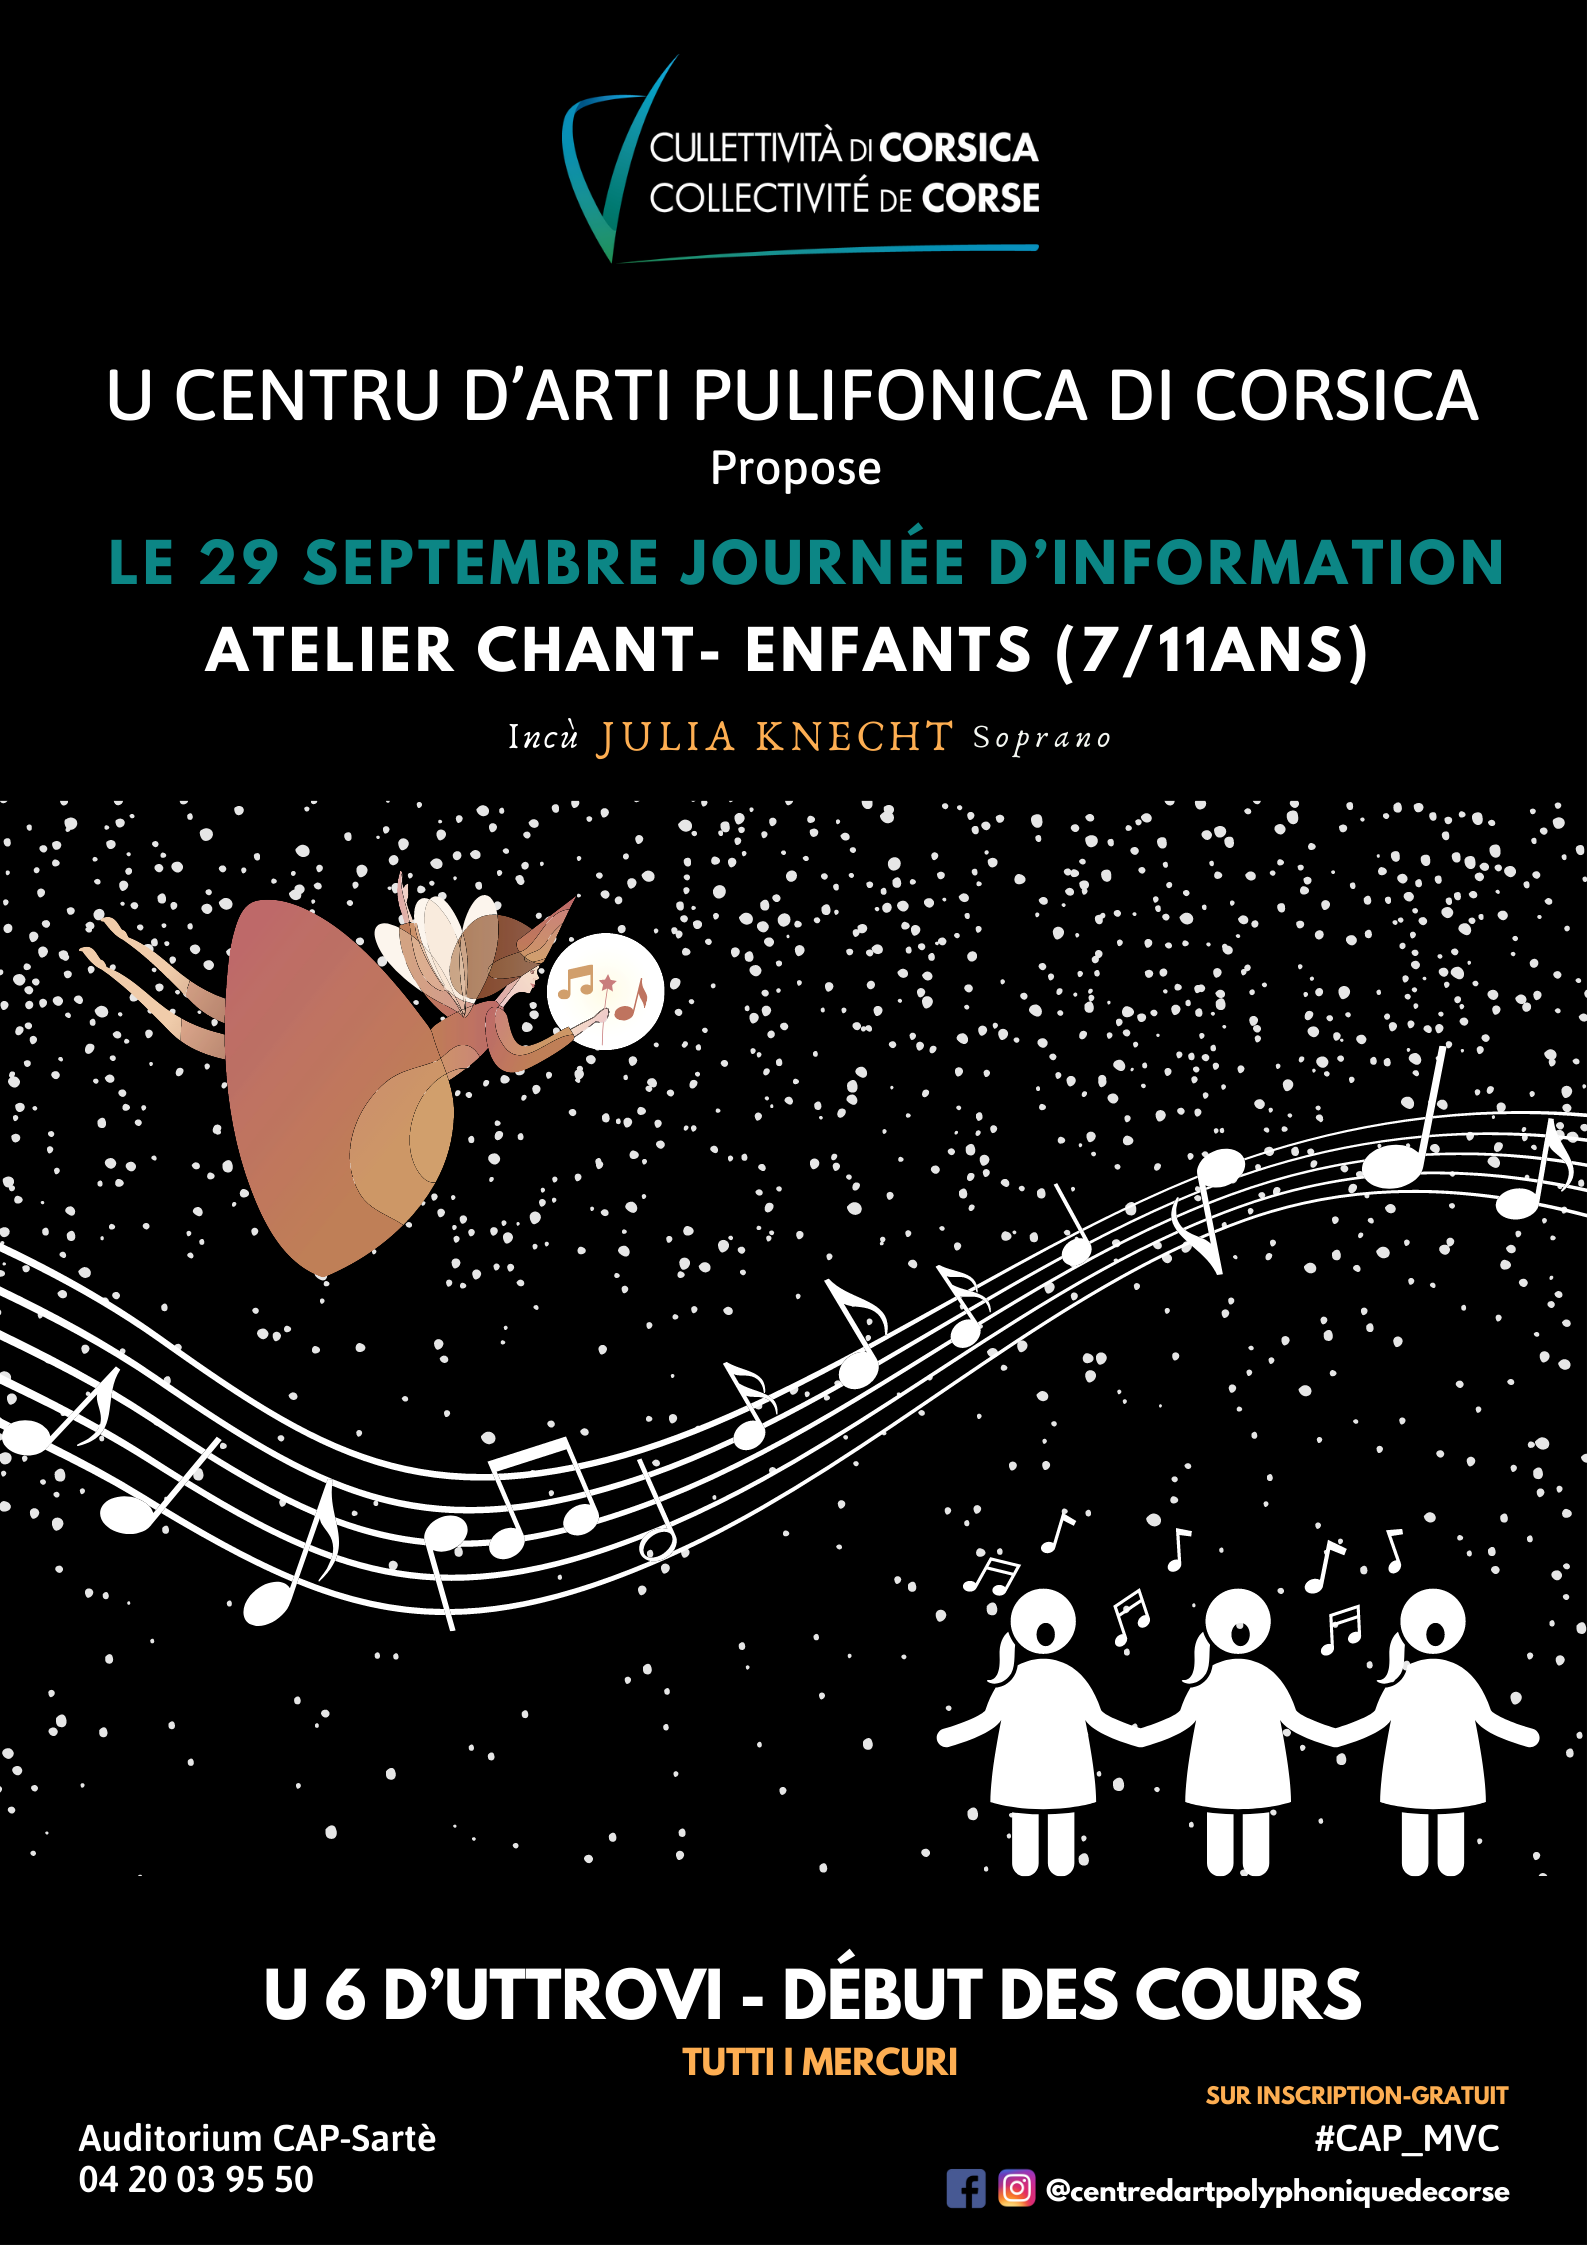 Journée d’information le 29 septembre de l’atelier chant-enfants « la fée de l’hiver » - Centru D’Arti Pulifonica di Corsica - Sartè